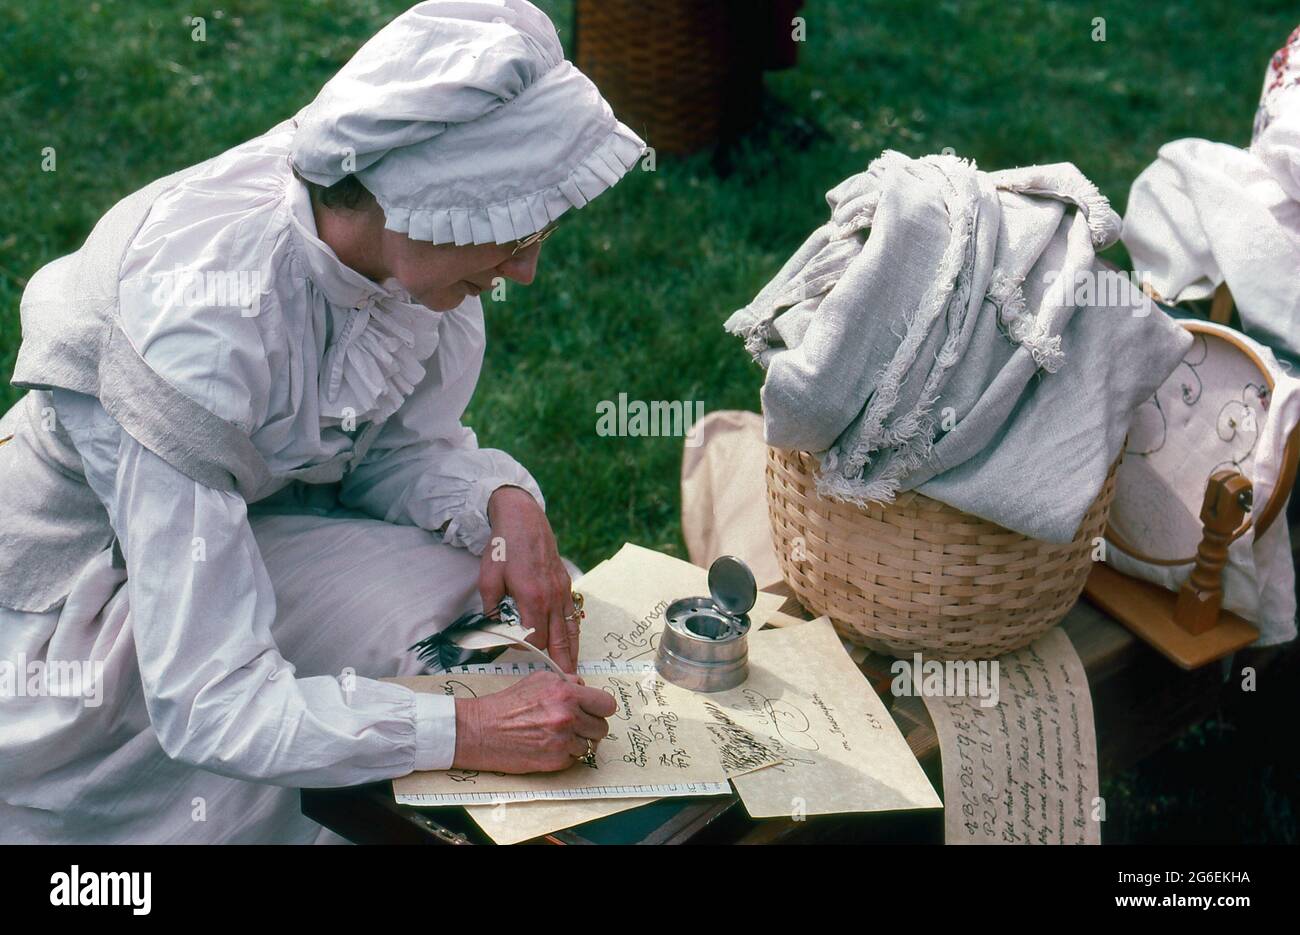 Ein Reenactor in historischen Kostümen übt Kalligraphie in einem Stil, der während des Revolutionskrieges in den amerikanischen Kolonien verwendet wurde. Stockfoto